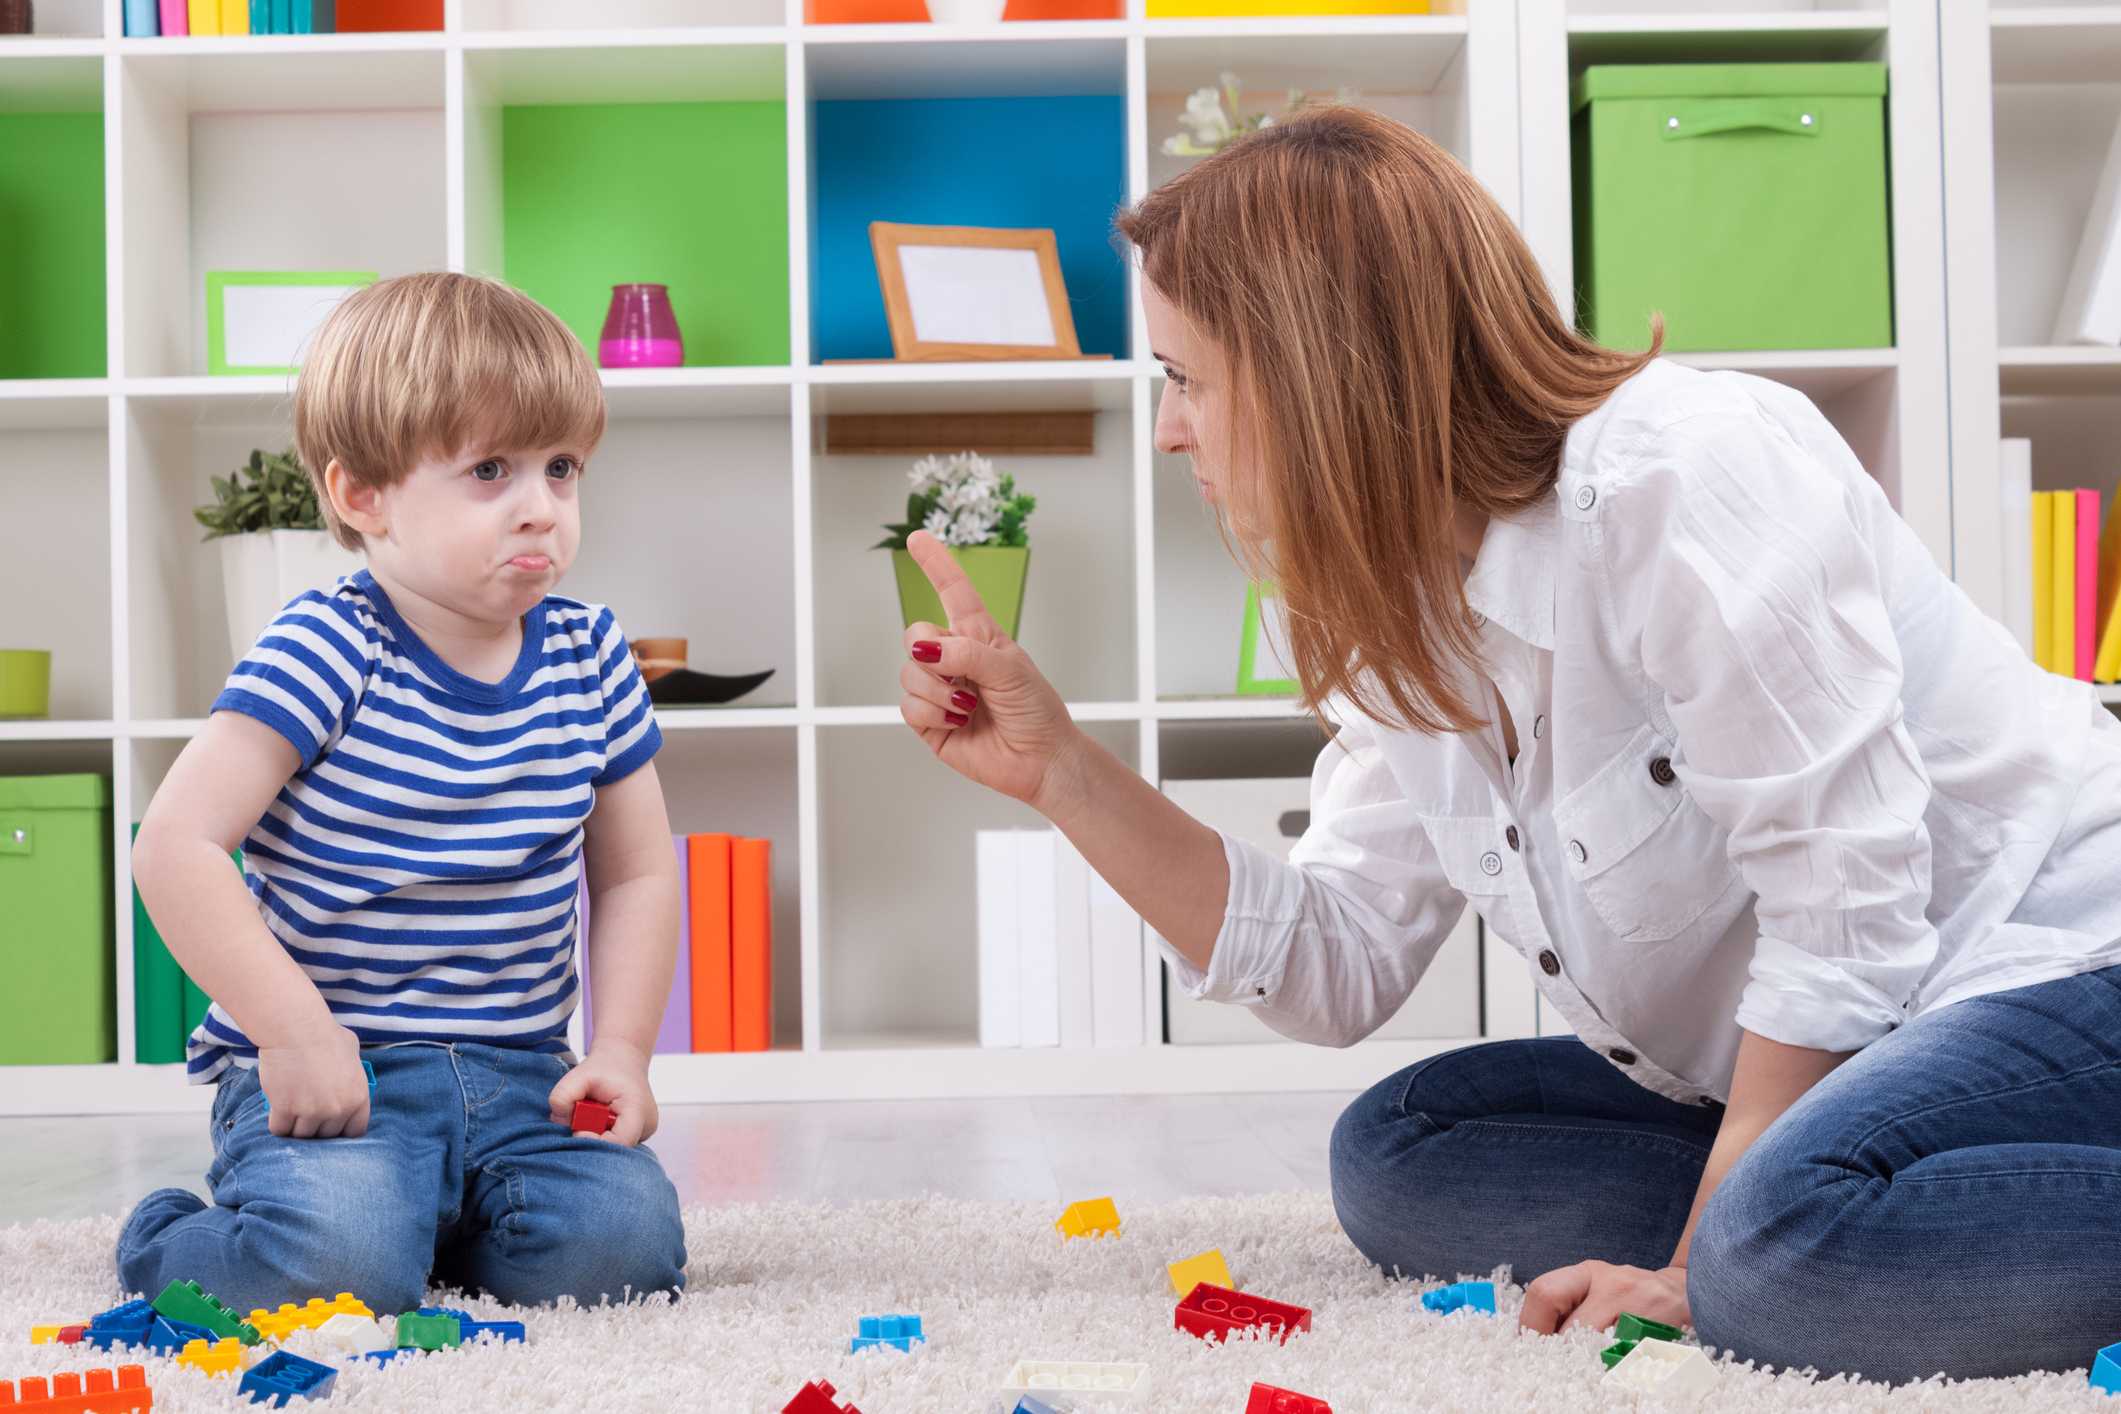 Плохое поведение ребенка - рекомендации психолога для родителей